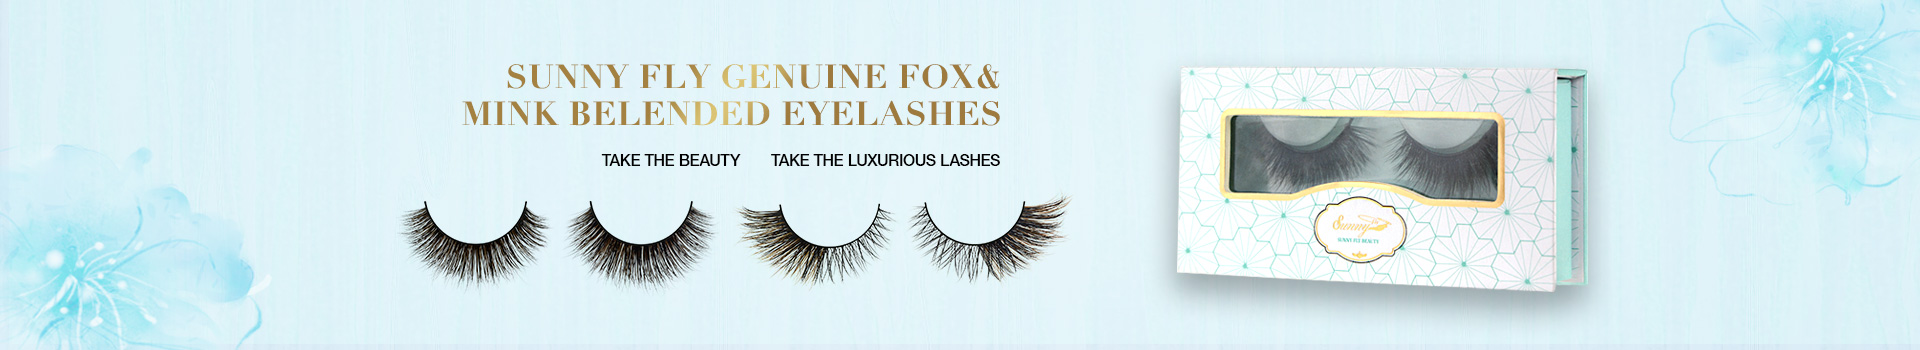 Fox & Mink Fur Blended Eyelashes FMB03